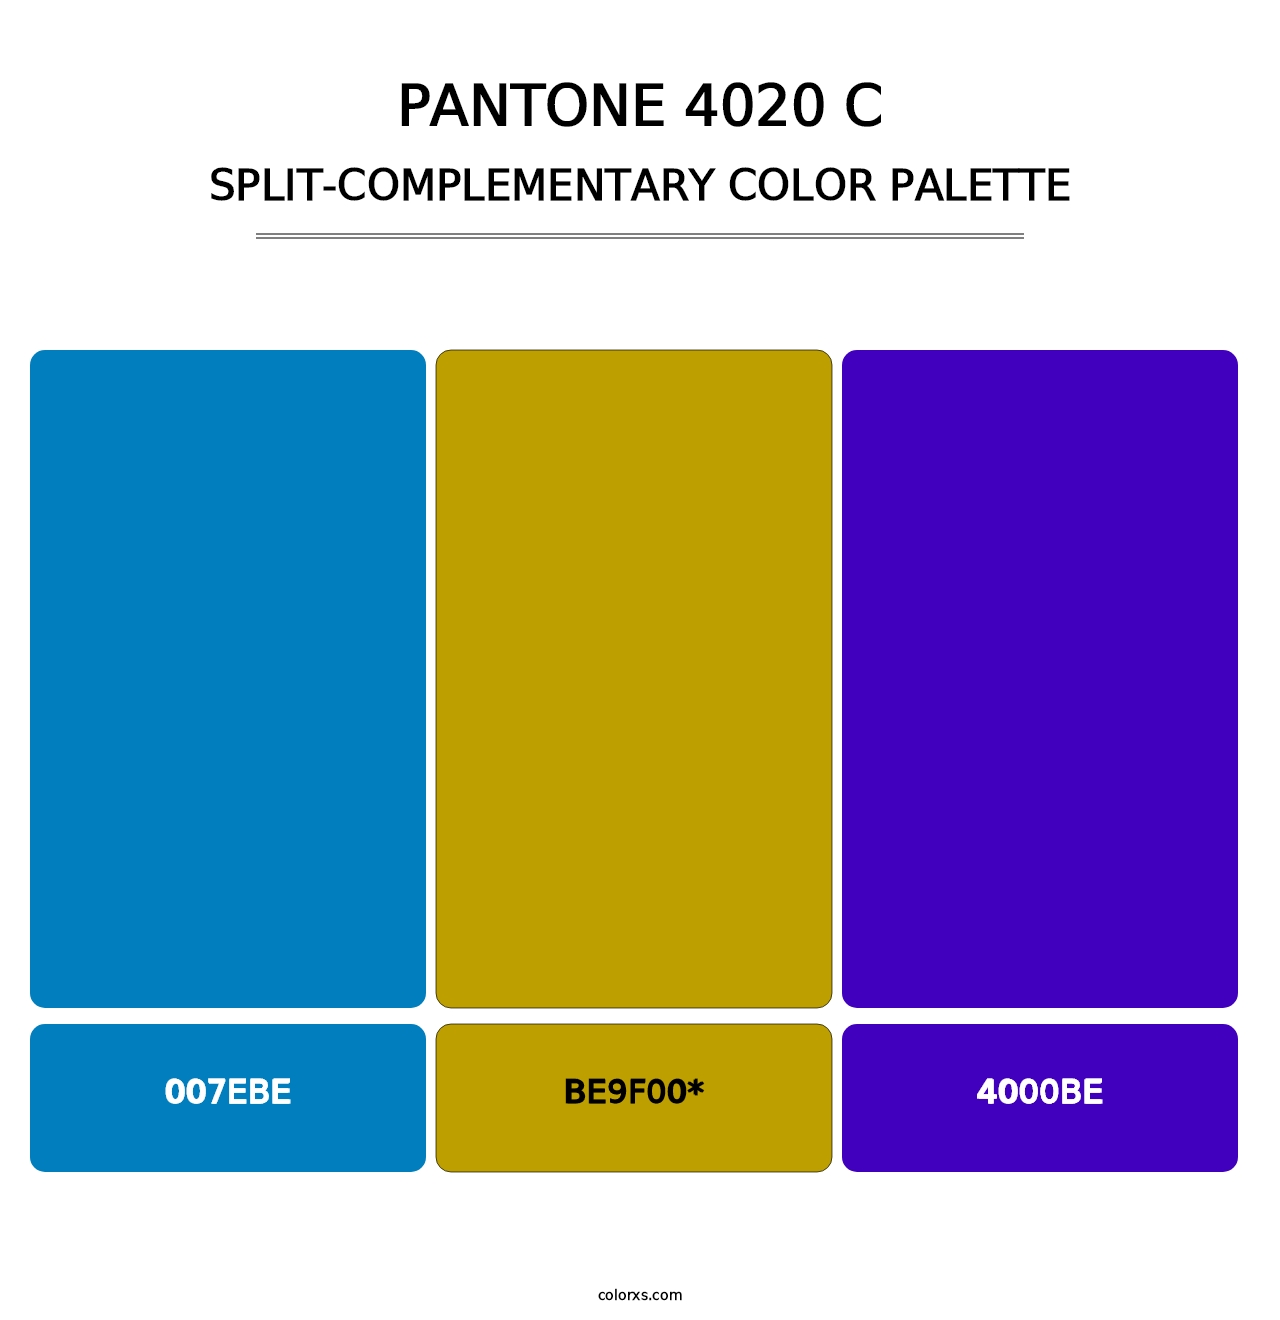 PANTONE 4020 C - Split-Complementary Color Palette